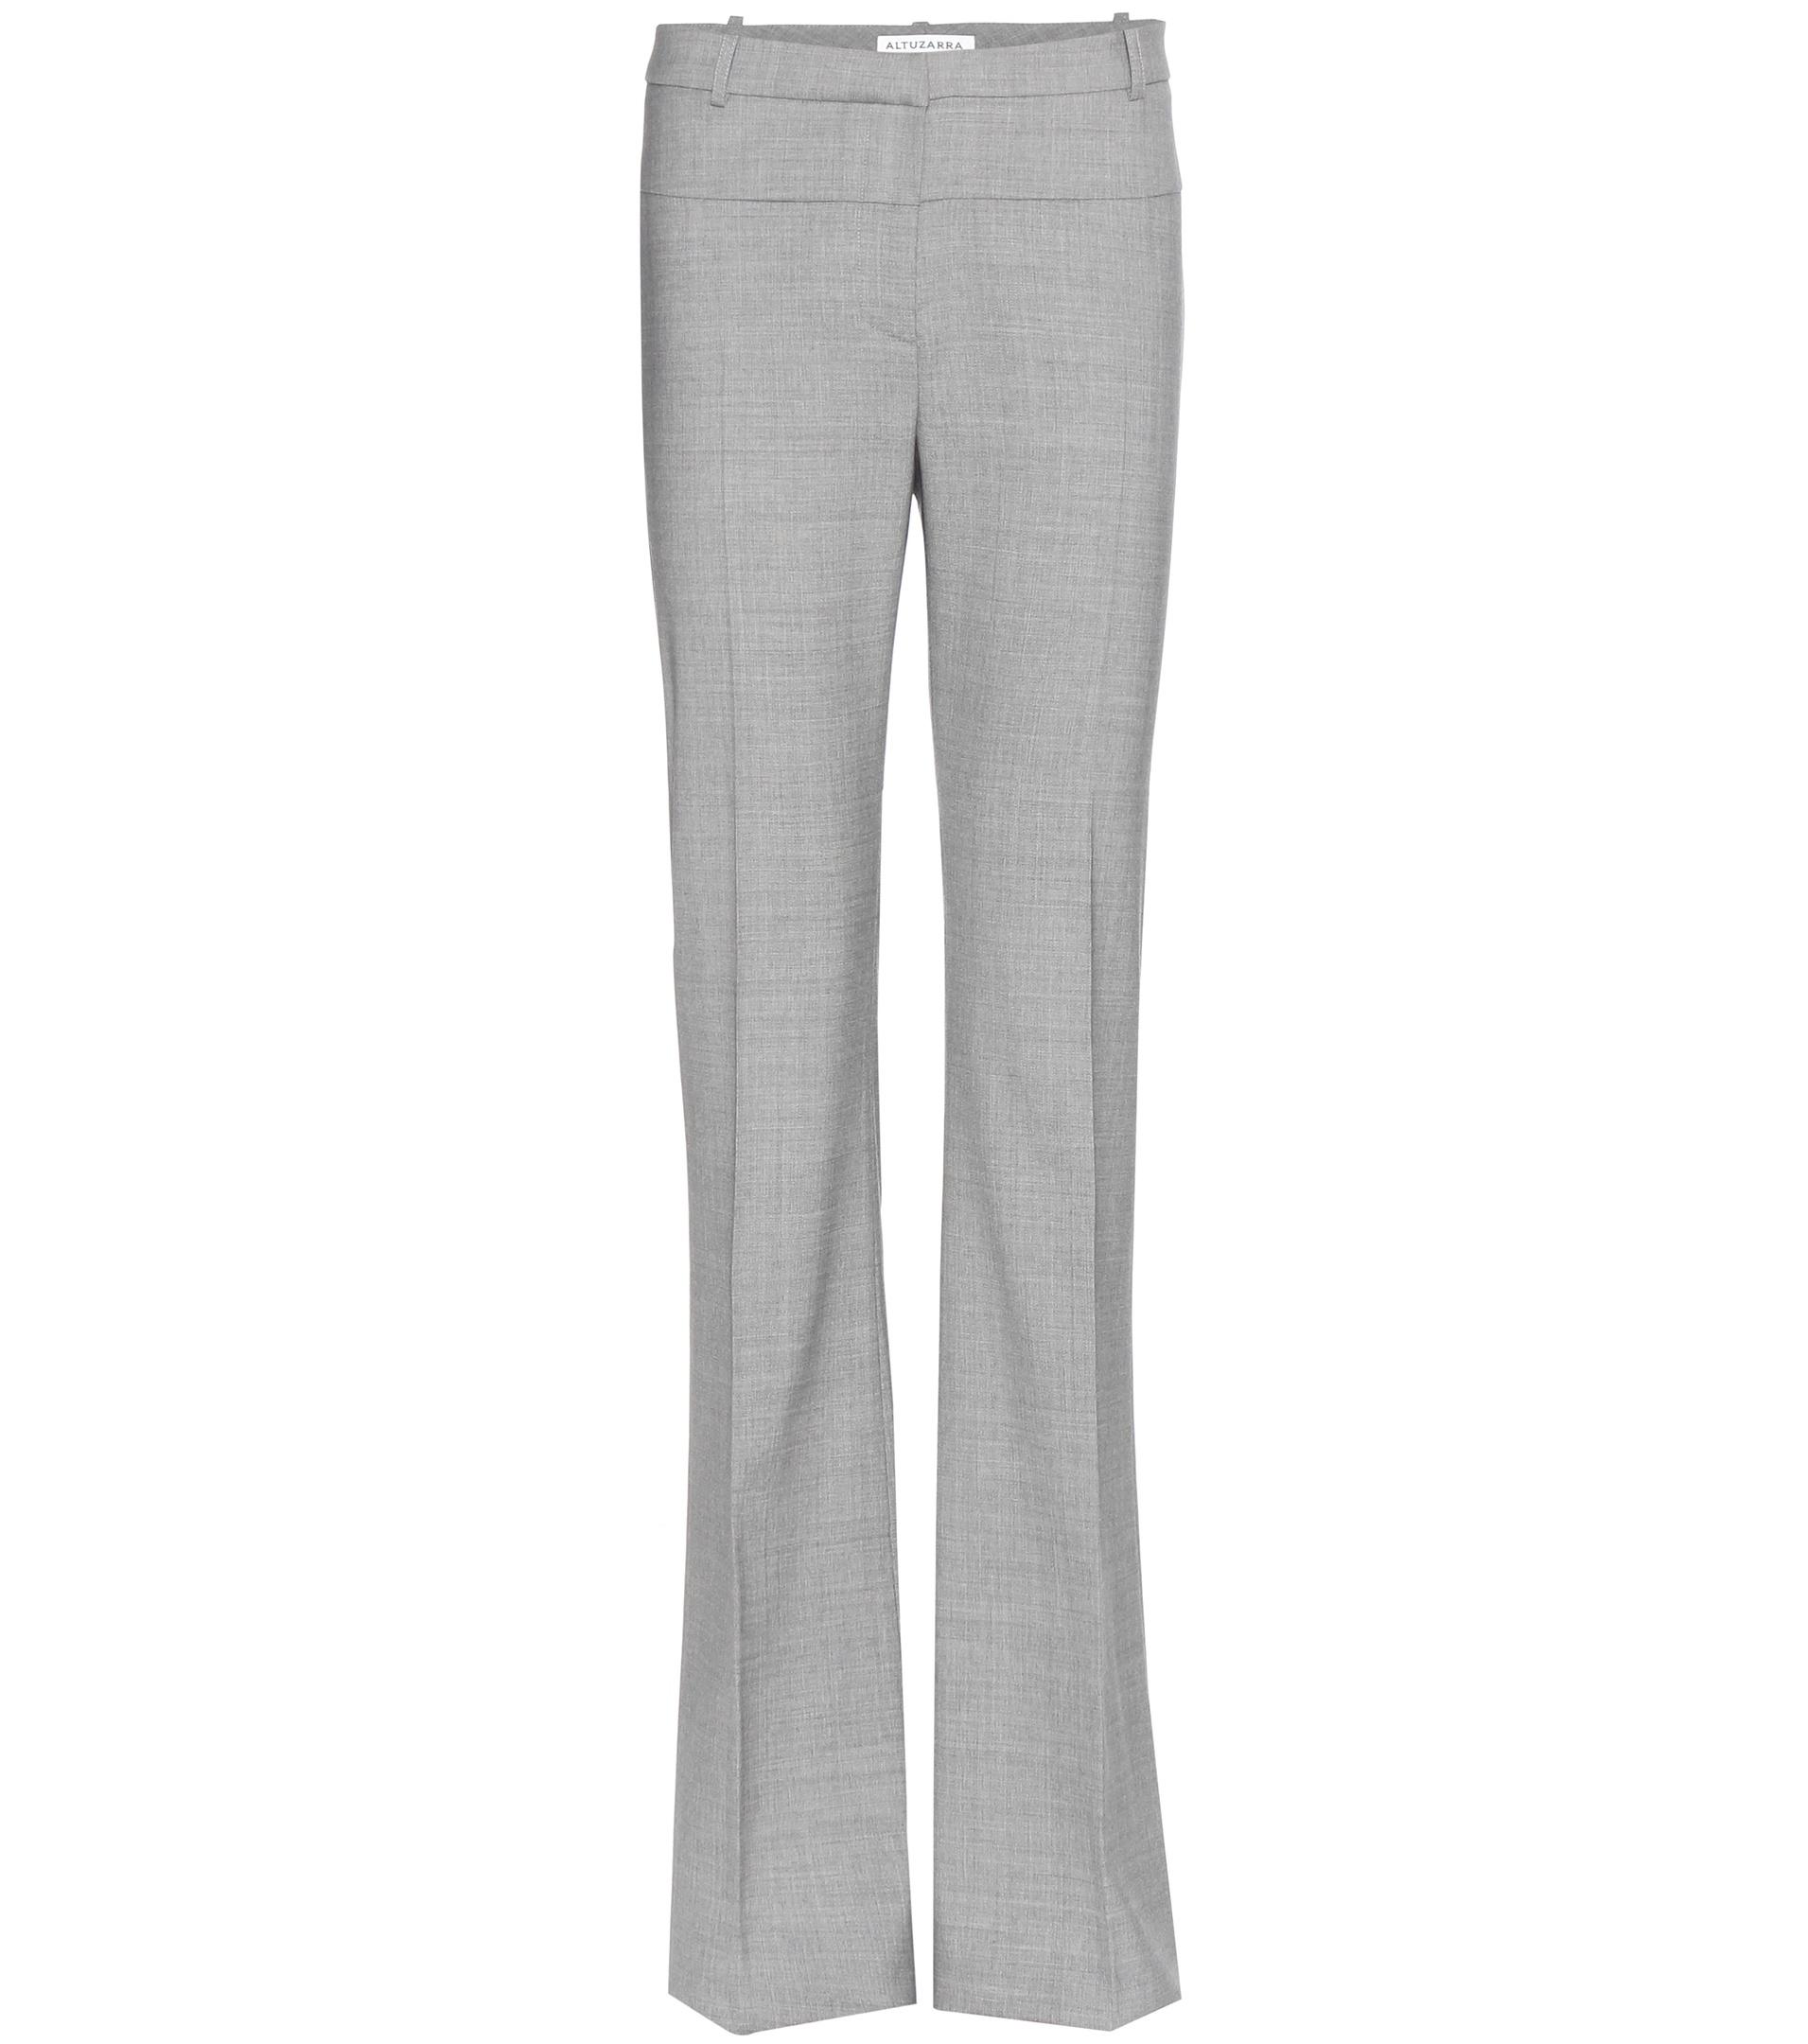 Lyst - Altuzarra Wool Trousers in Gray - Save 20%